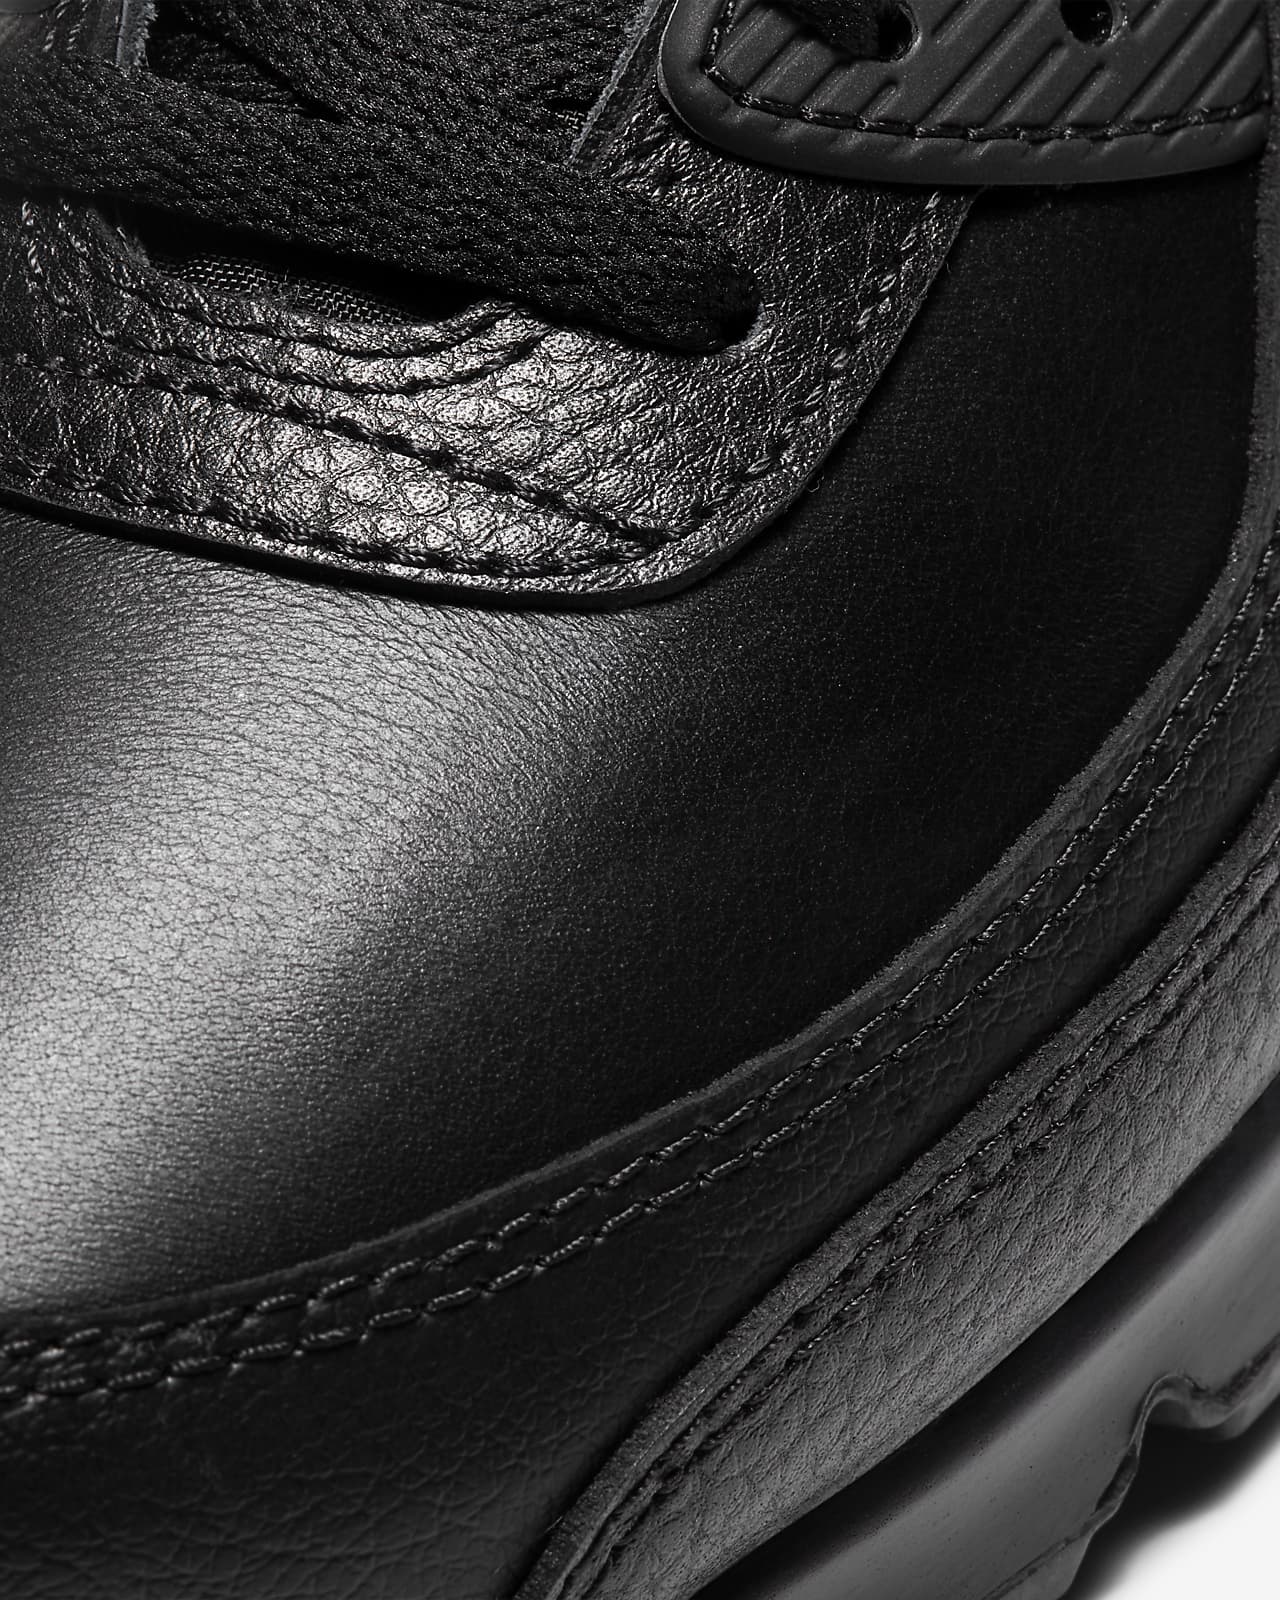 Moda lanzamiento soldadura Air Max 90 LTR Men's Shoe. Nike AU